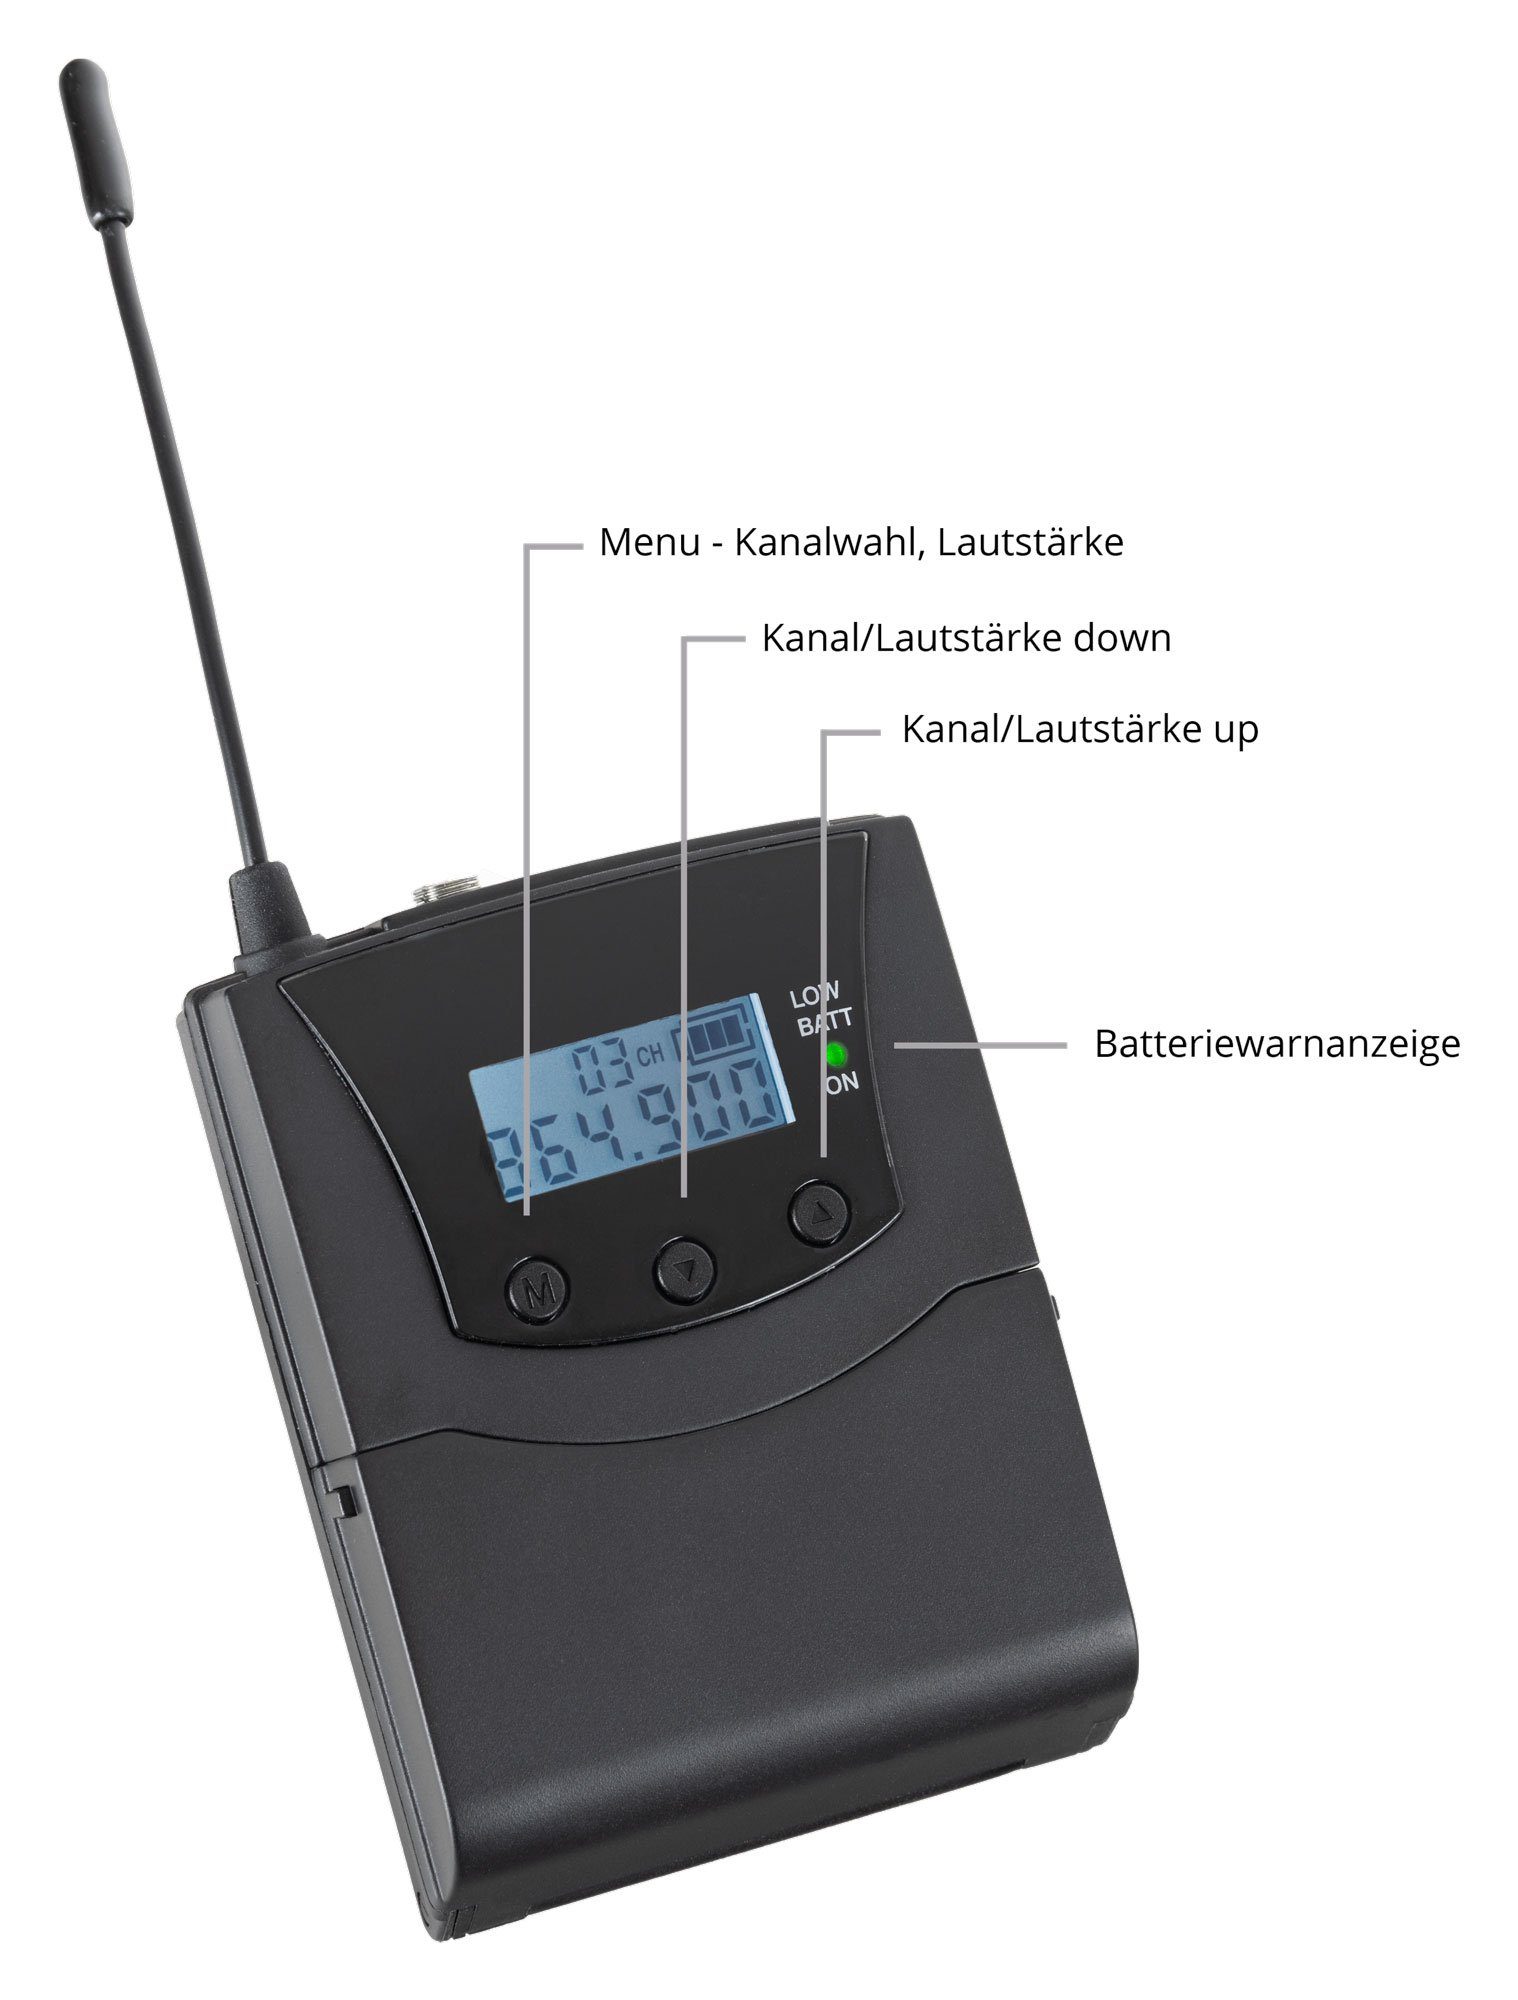 SDR-BP30 Guide Kopfhörer) Kanäle, mit Funk-Kopfhörer (Stereo 3 zur Bodypack-Receiver Funk-Empfänger mit Silent empfangbare handelsüblichen Beatfoxx Verwendung jedem UHF-Technik, V2